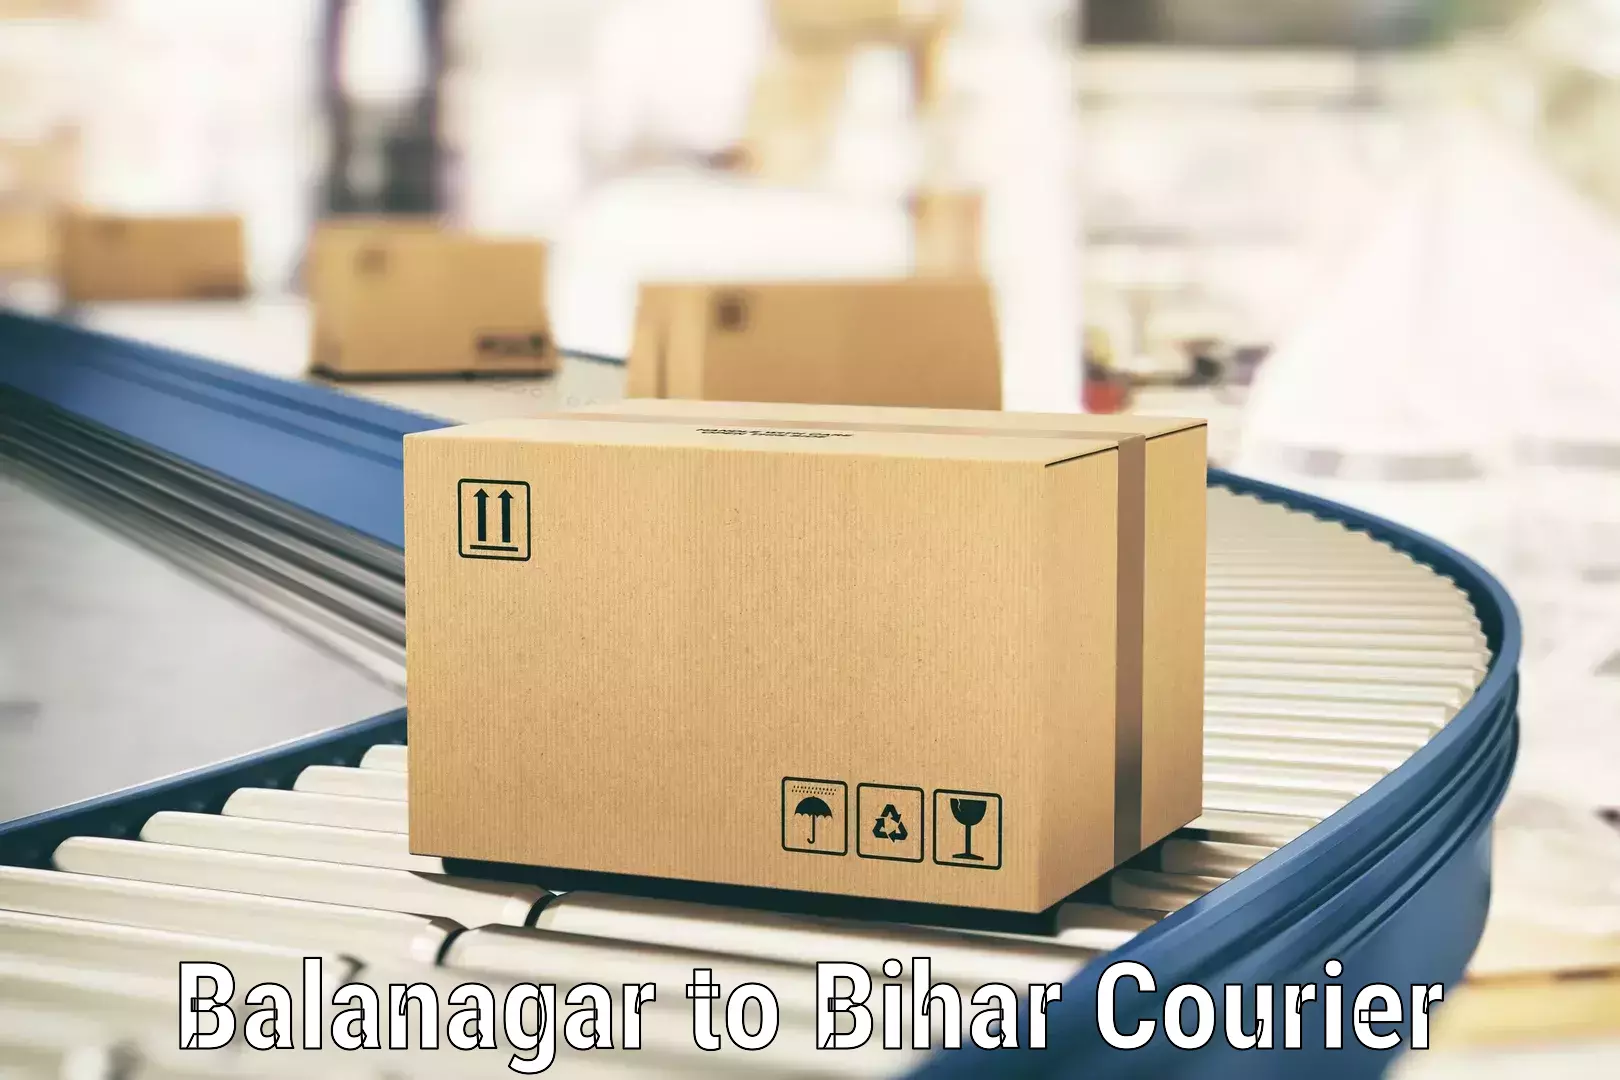 Package forwarding in Balanagar to Chainpur